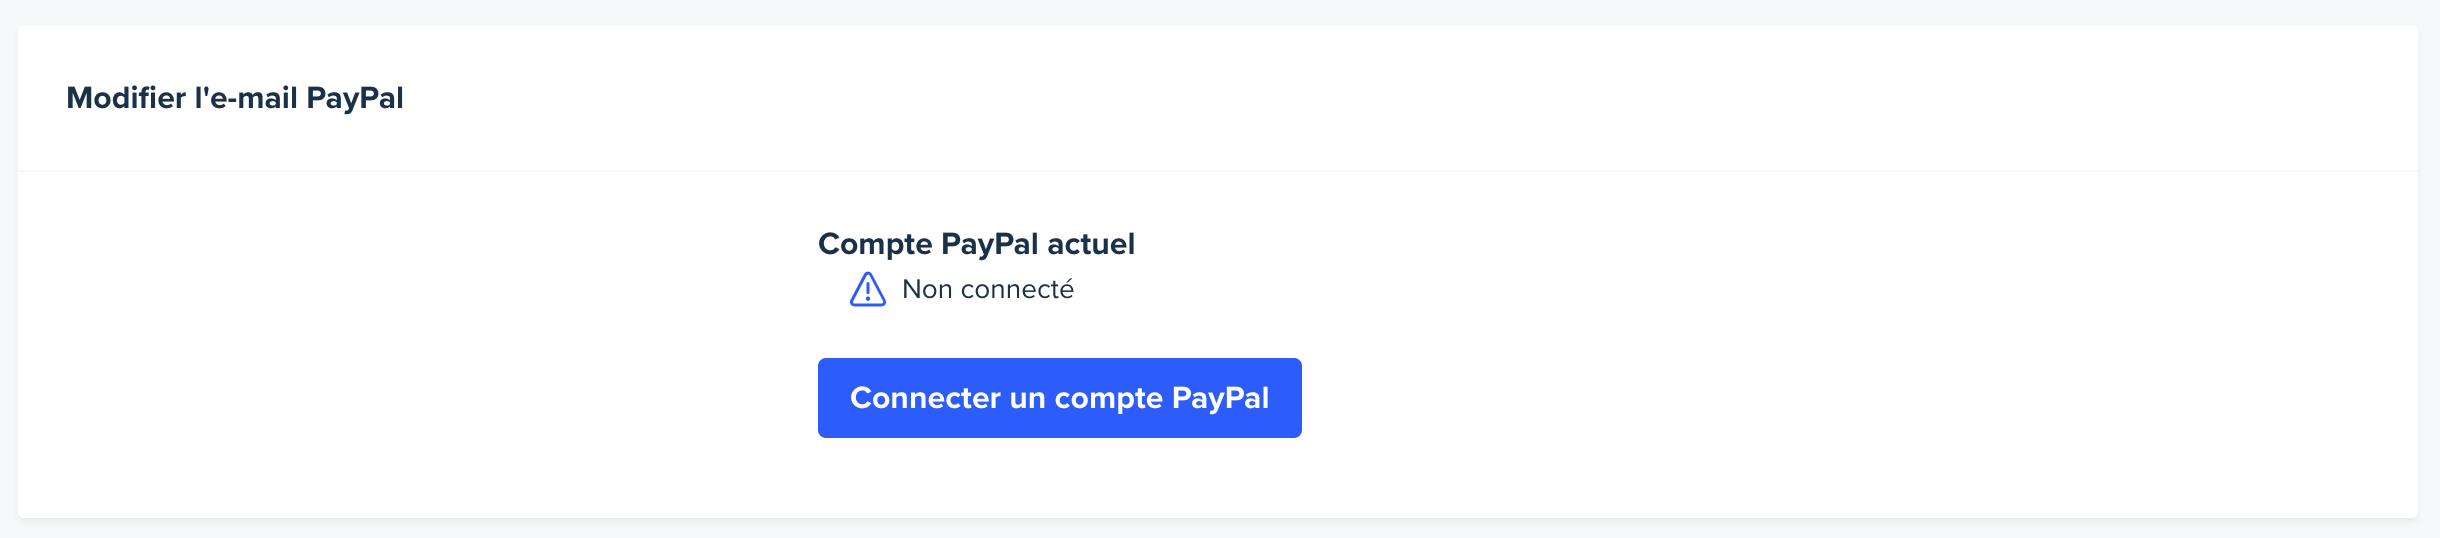 Image de la page des paramètres du compte. La page est déroulée jusqu'à la section Modifier l'e-mail PayPal. Un message indique que le compte PayPal n'est pas encore connecté. Un bouton permet à l'utilisateur de connecter ses comptes PayPal et UserTesting.